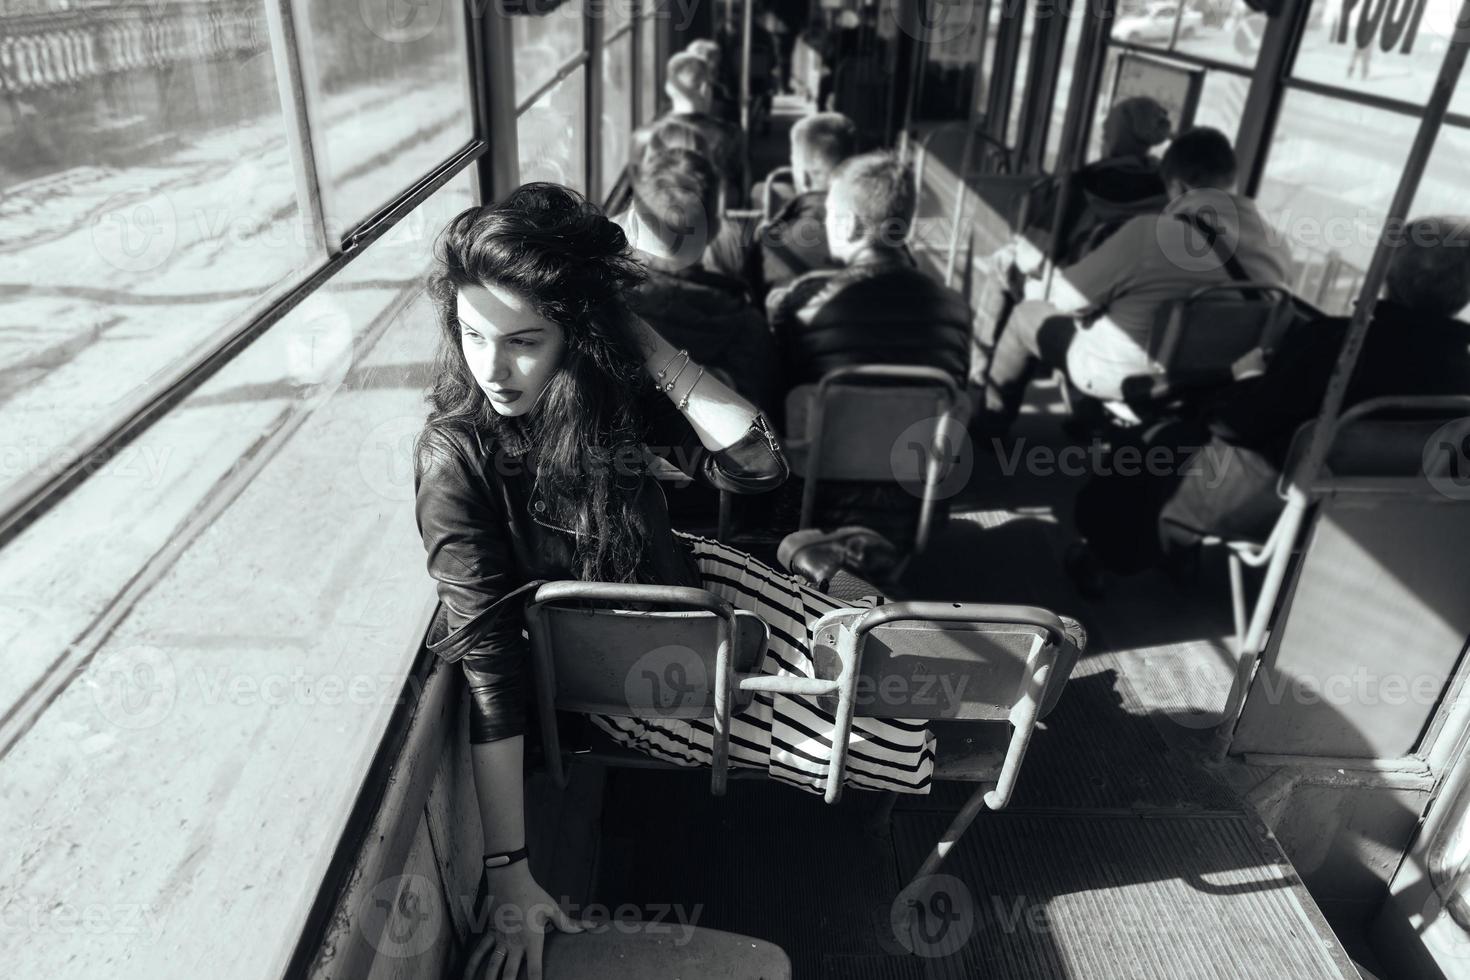 femme voyageant à l'intérieur du tram photo